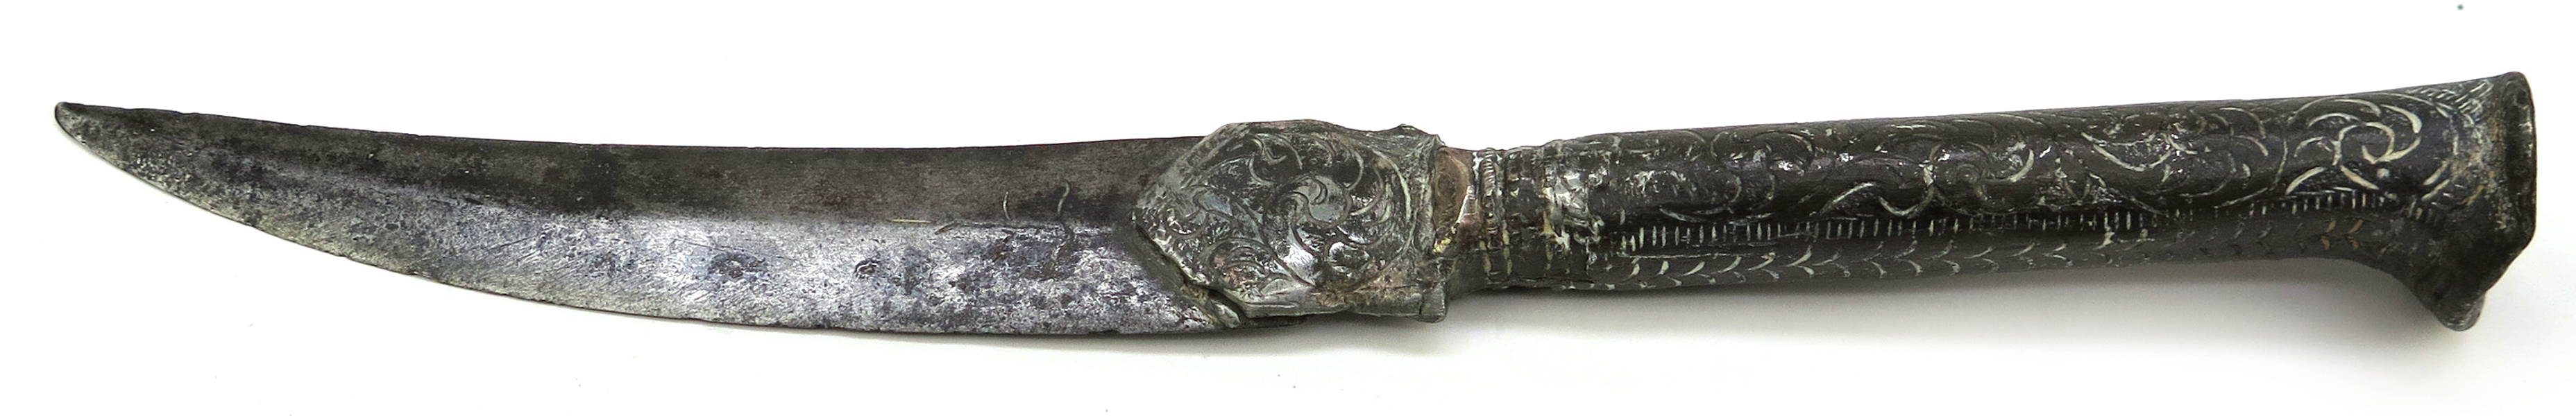 Kniv, stål med silverdekor, så kallad Bichaq, Balkan, 17-1800-tal, klinga med svårtydd inskription, l 23 cm, skador_28361a_lg.jpeg